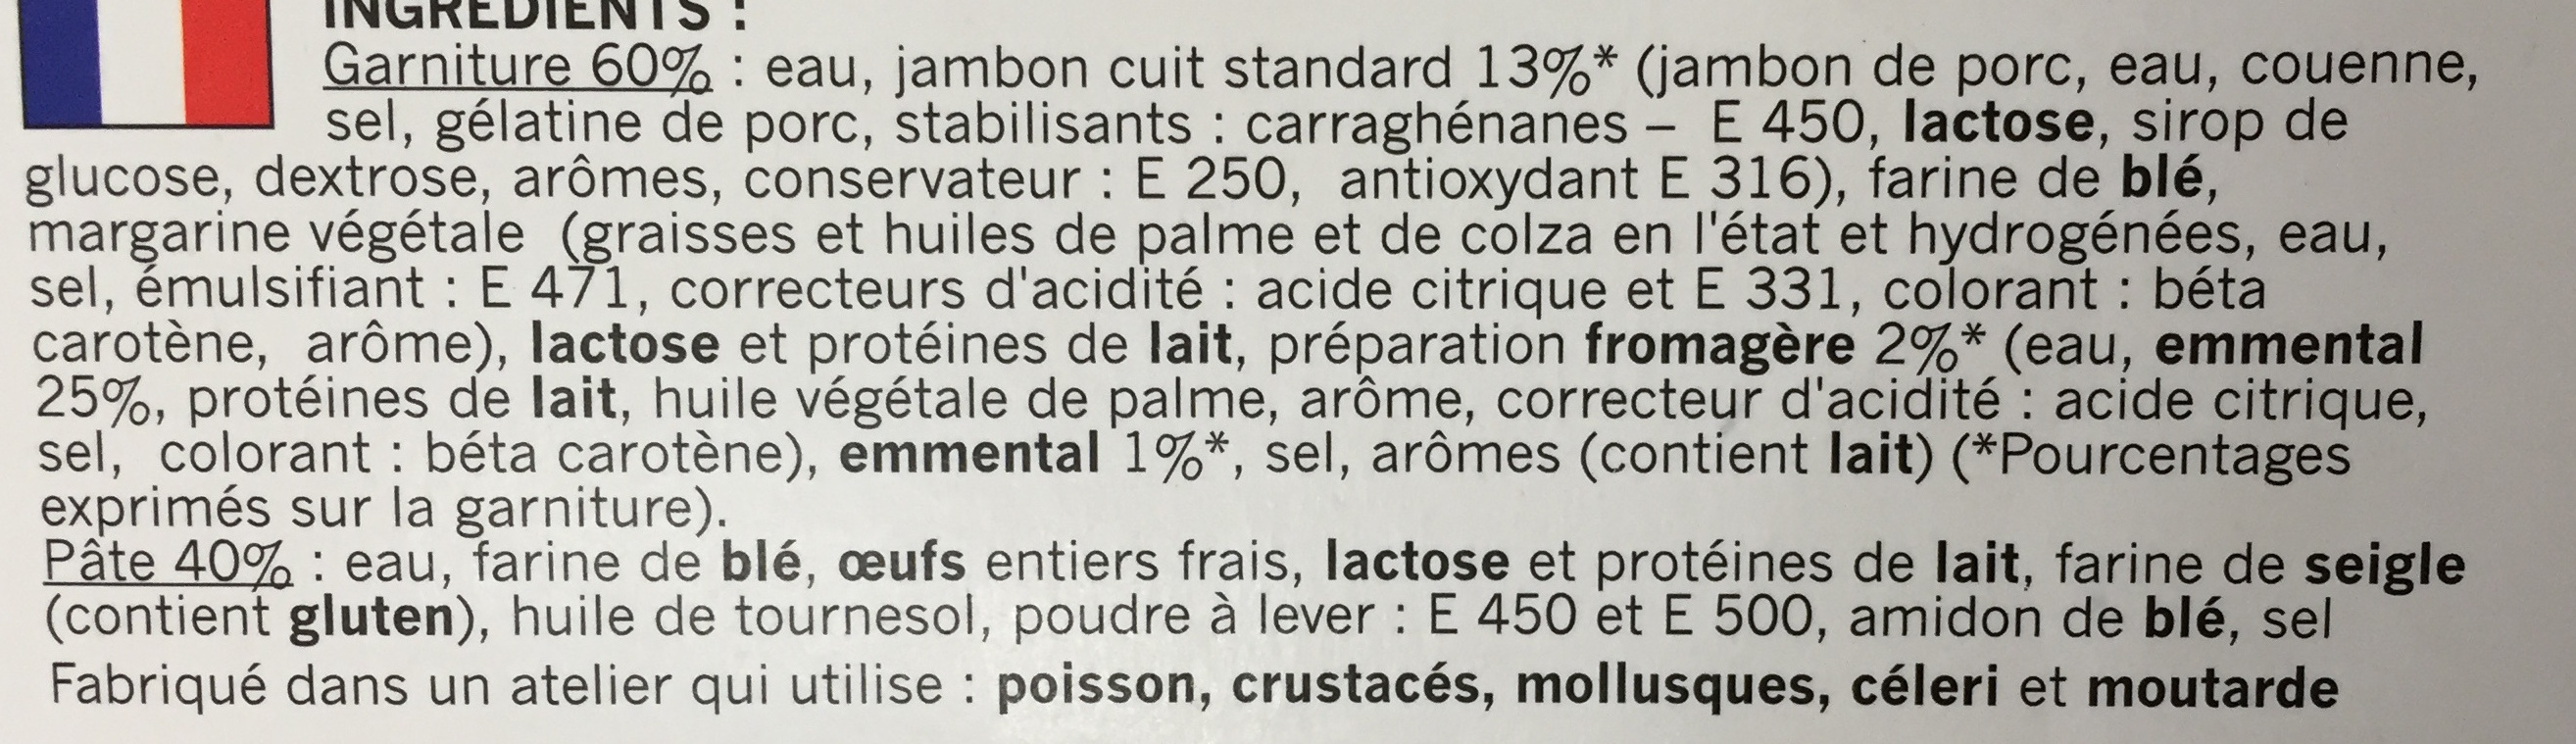 Crêpes jambon-fromage surgelées - Ingredienser - fr